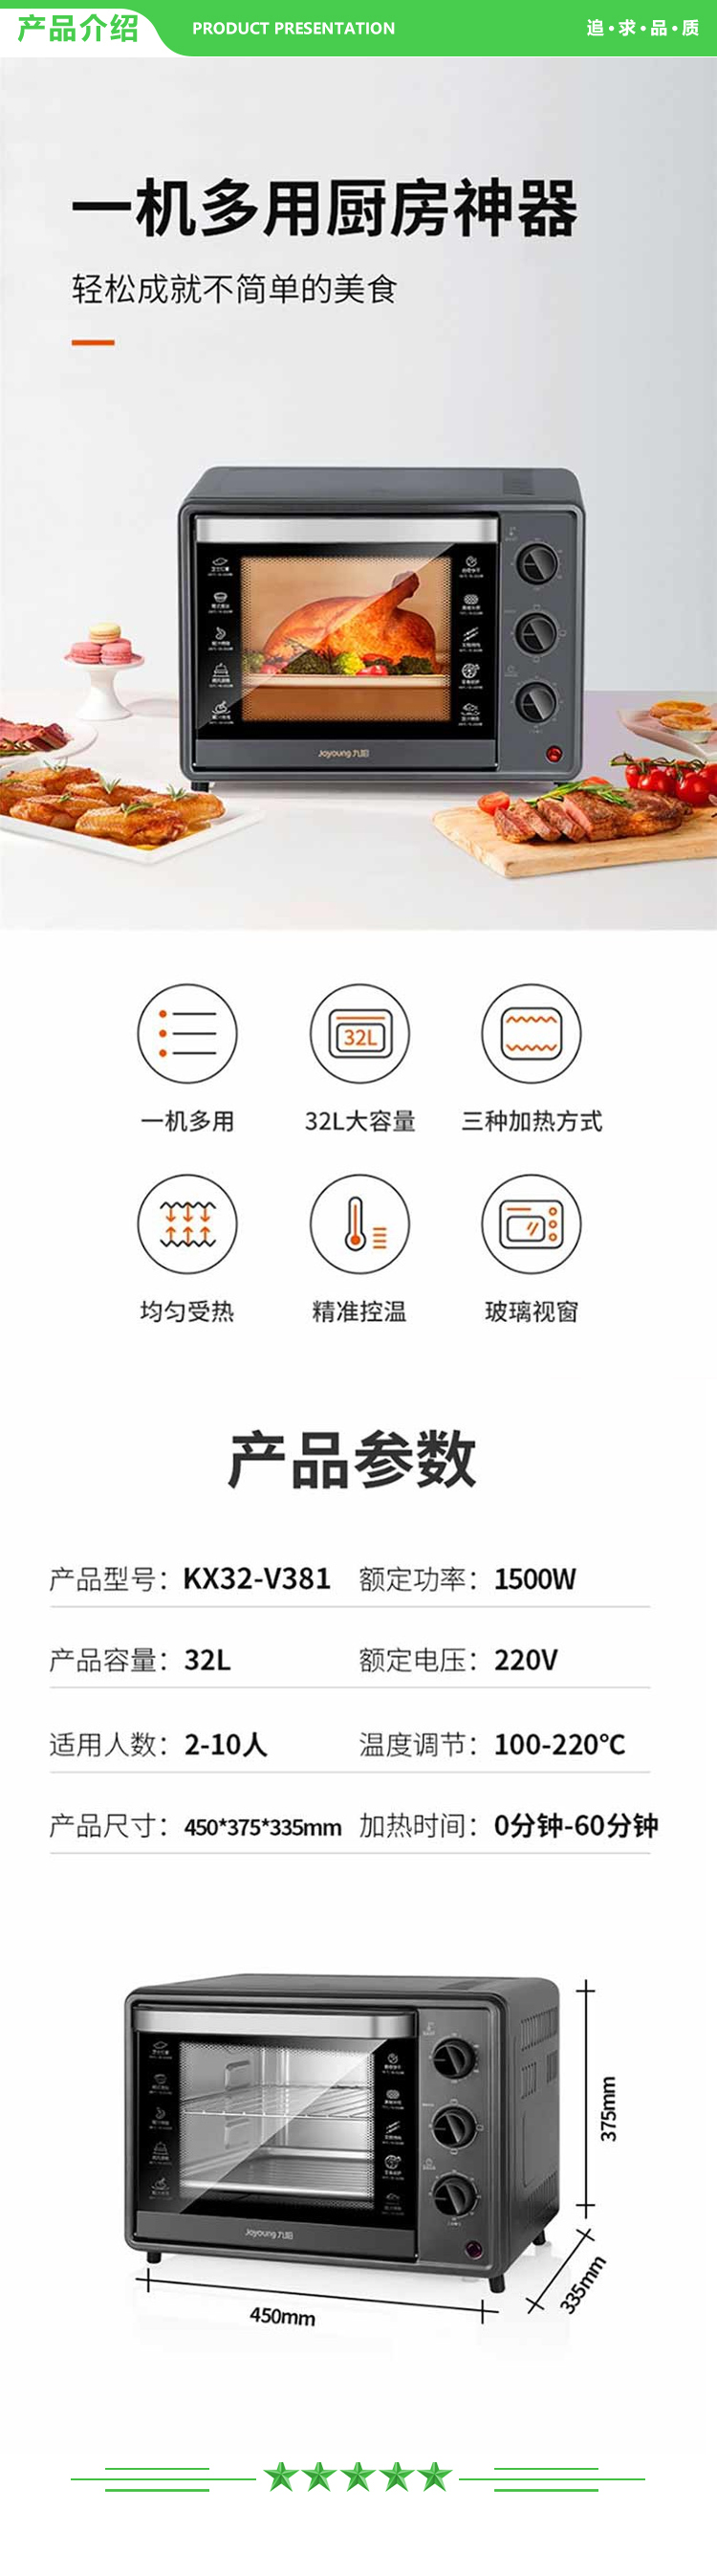 九阳 Joyoung KX32-V381 电烤箱 32L.jpg